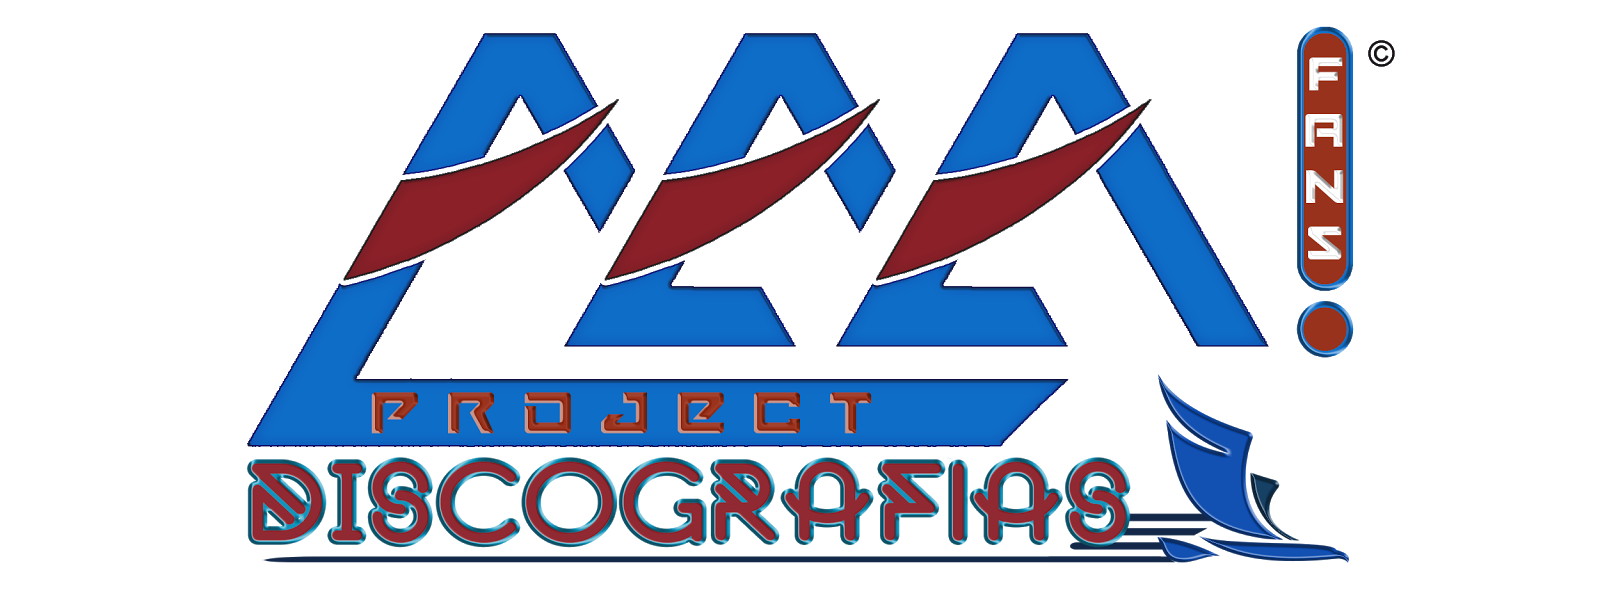 AAA! Fans Project WebSite